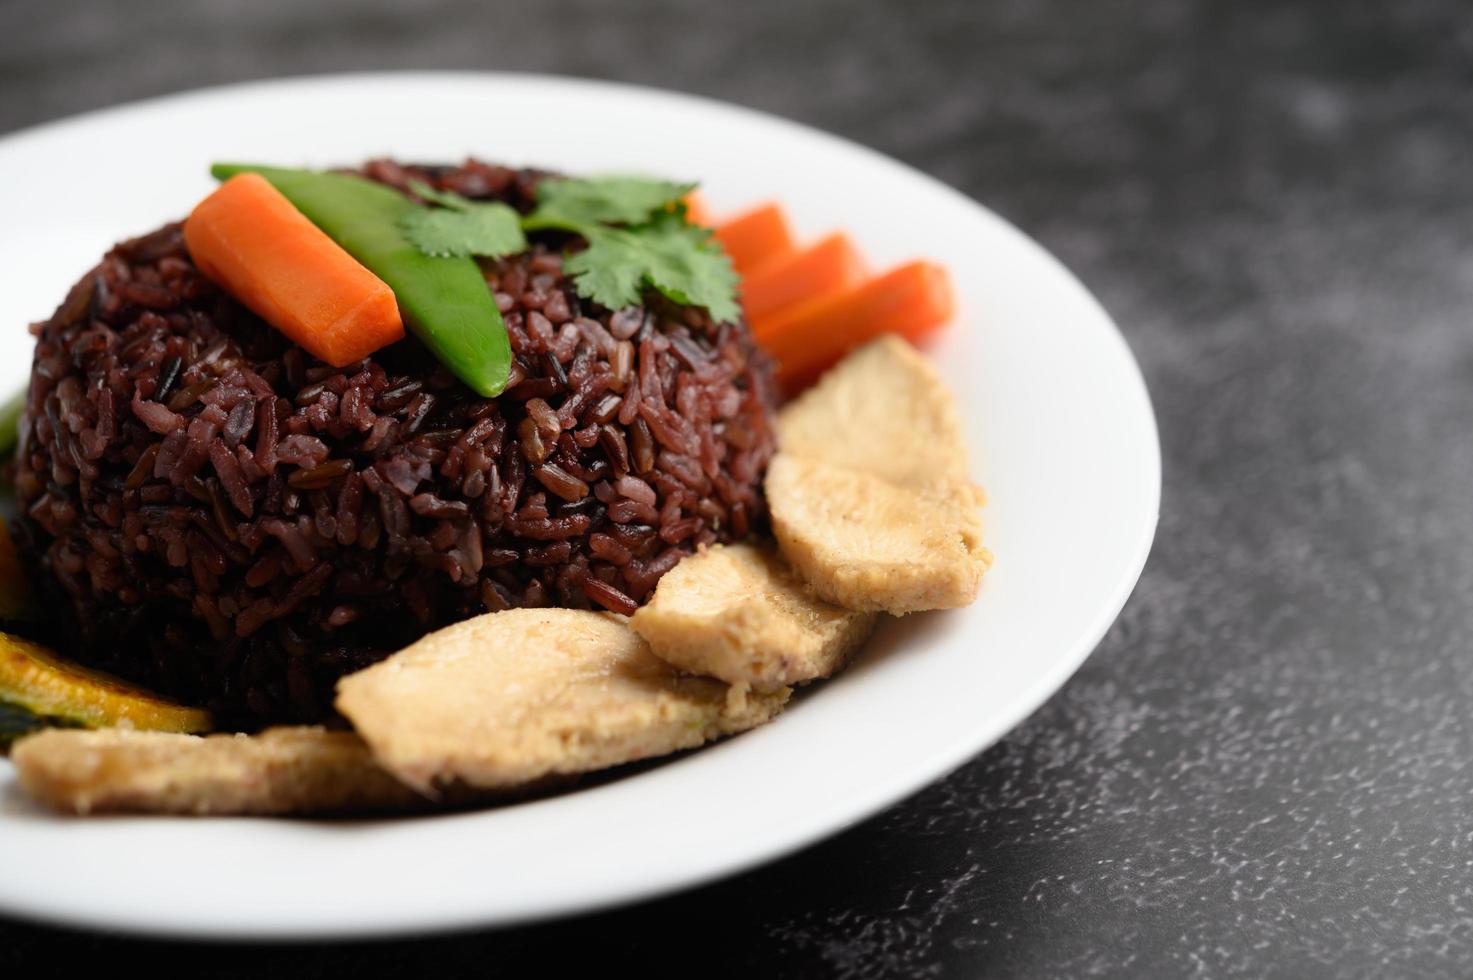 bayas de arroz morado con pechuga de pollo a la plancha, calabaza, zanahorias y menta foto